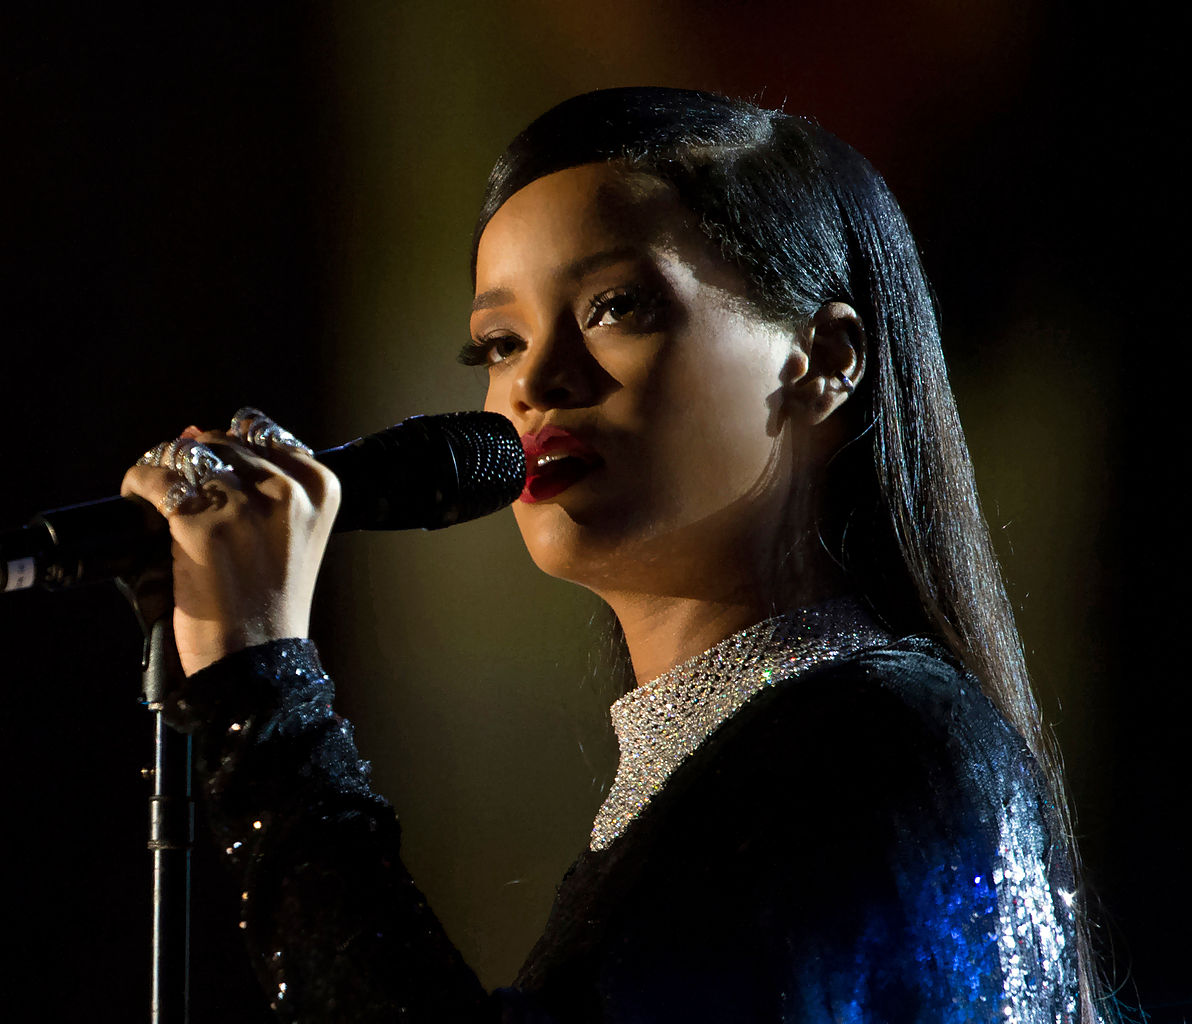     Coronavirus : Rihanna fait plusieurs dons à la Barbade et aux organisations internationales

